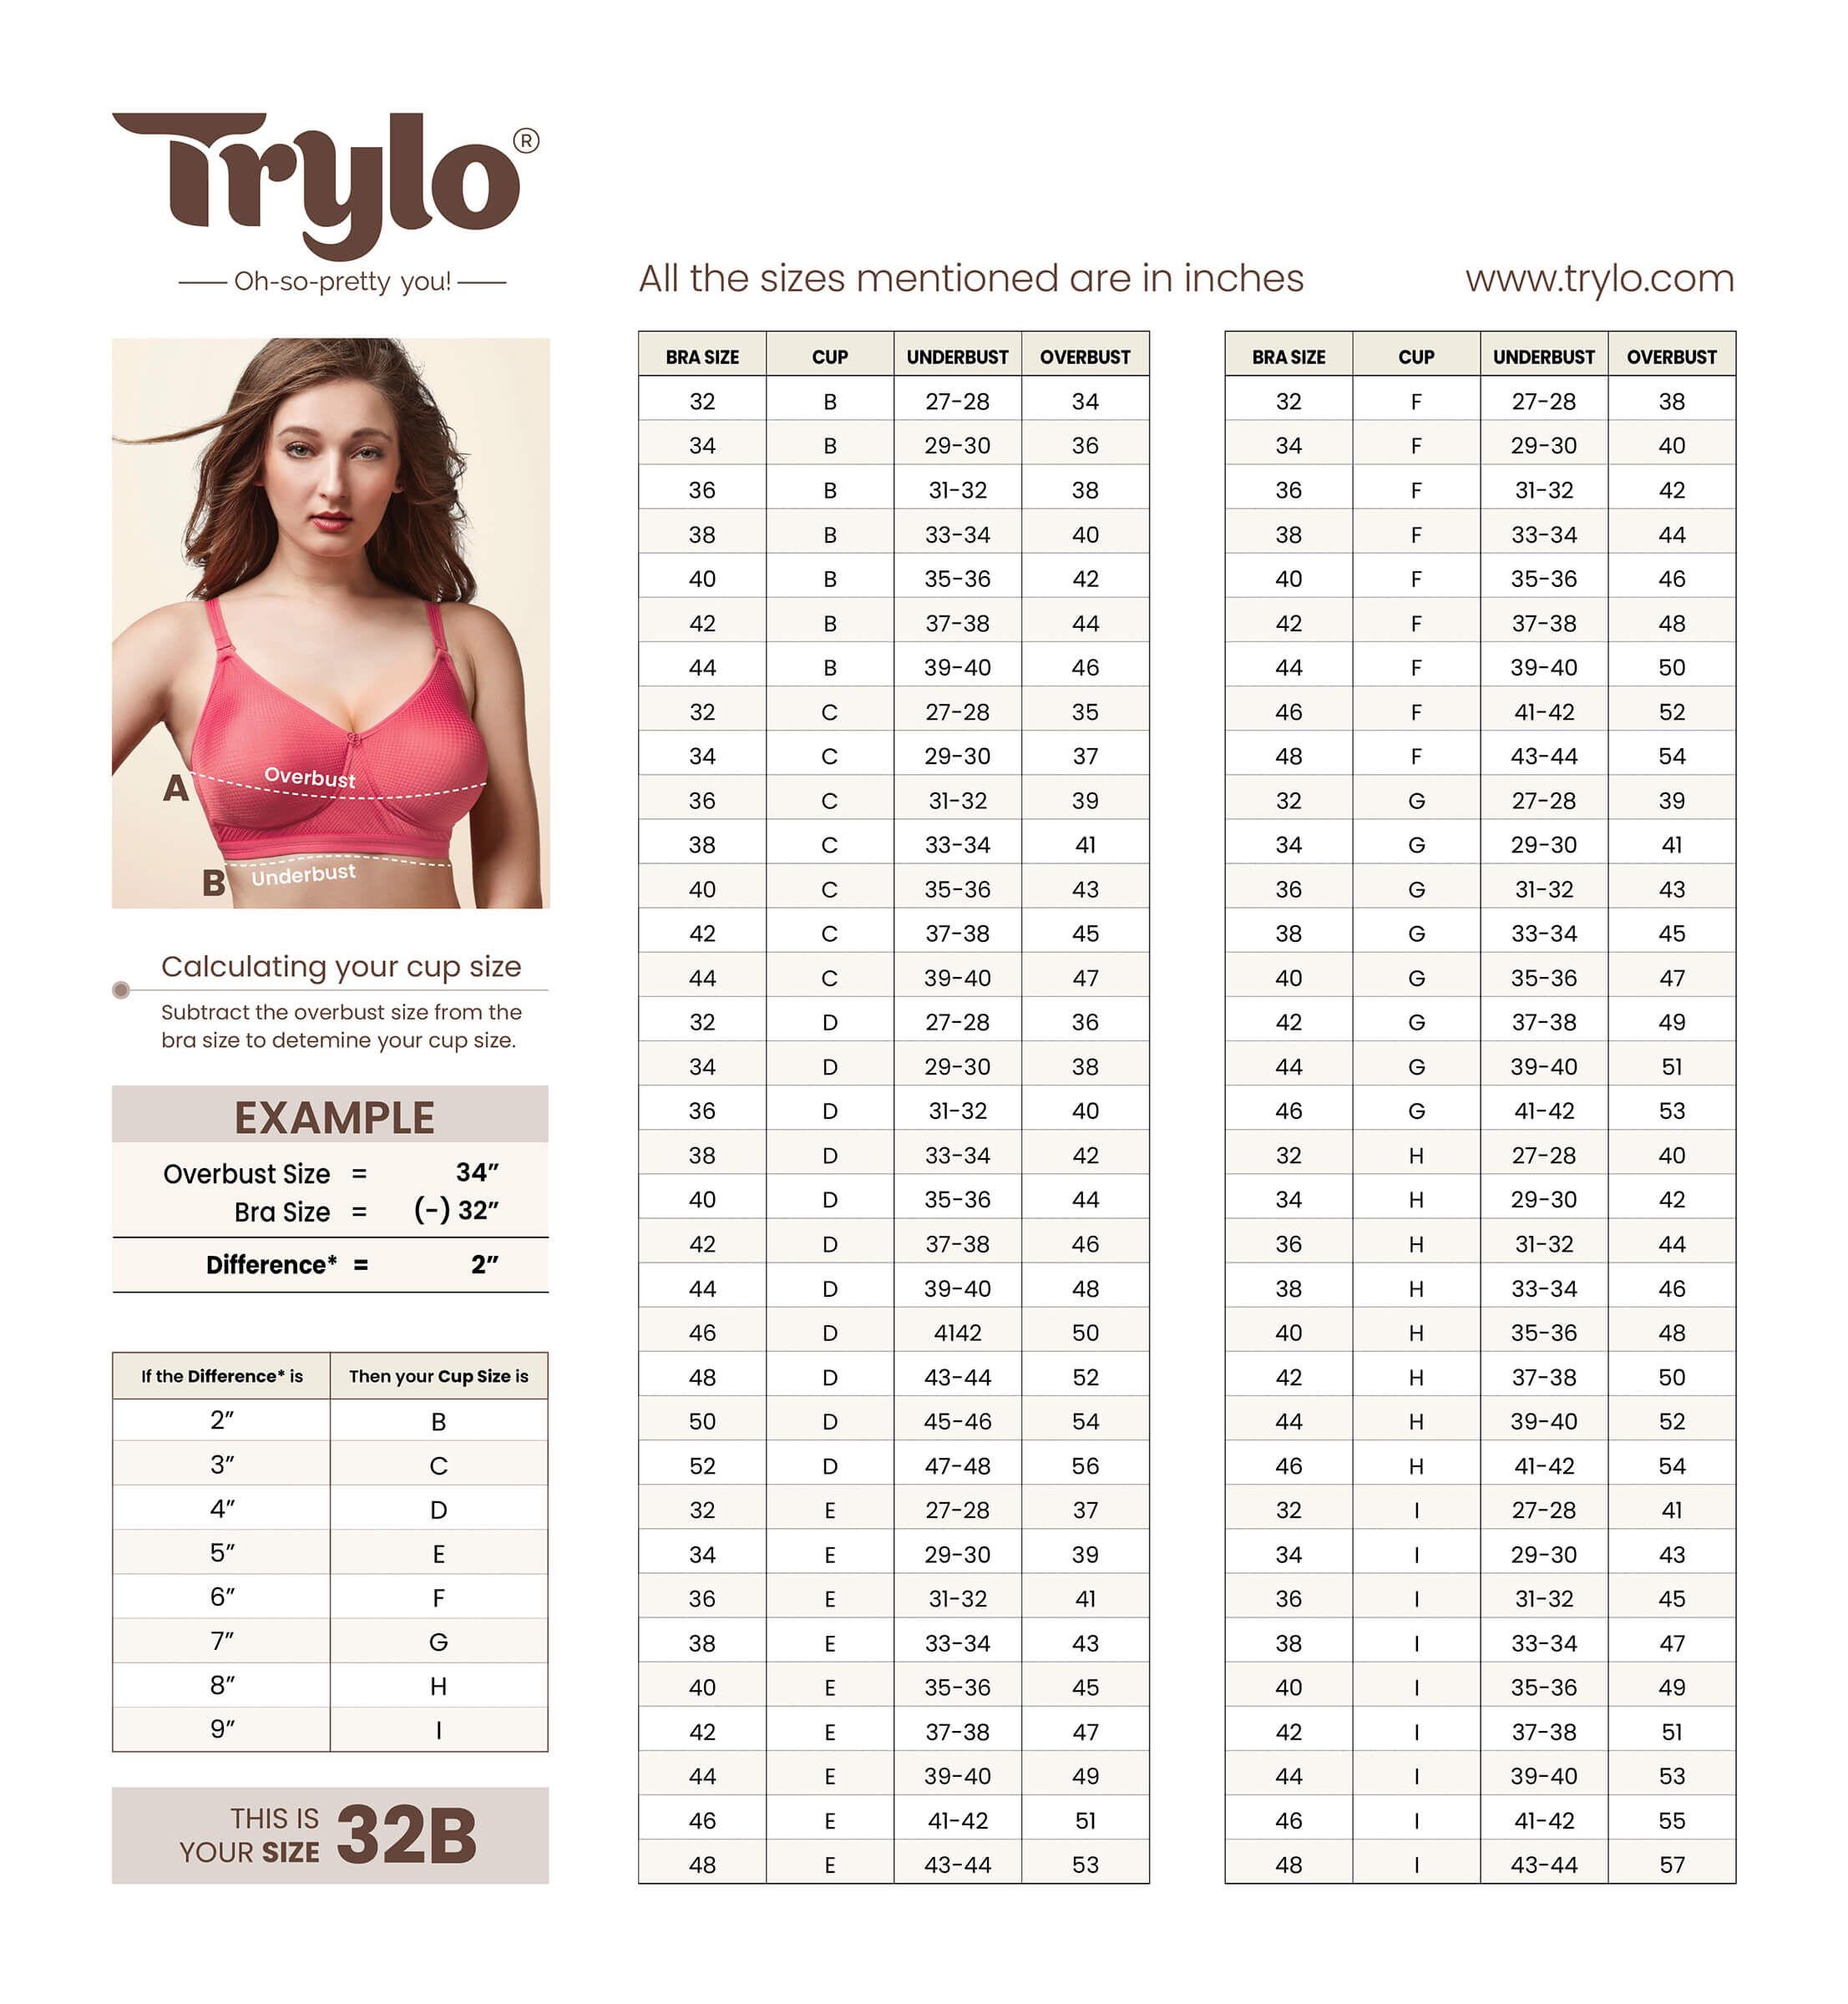 https://www.trylo.com/media/wysiwyg/trylo-bra-size-chart.jpg